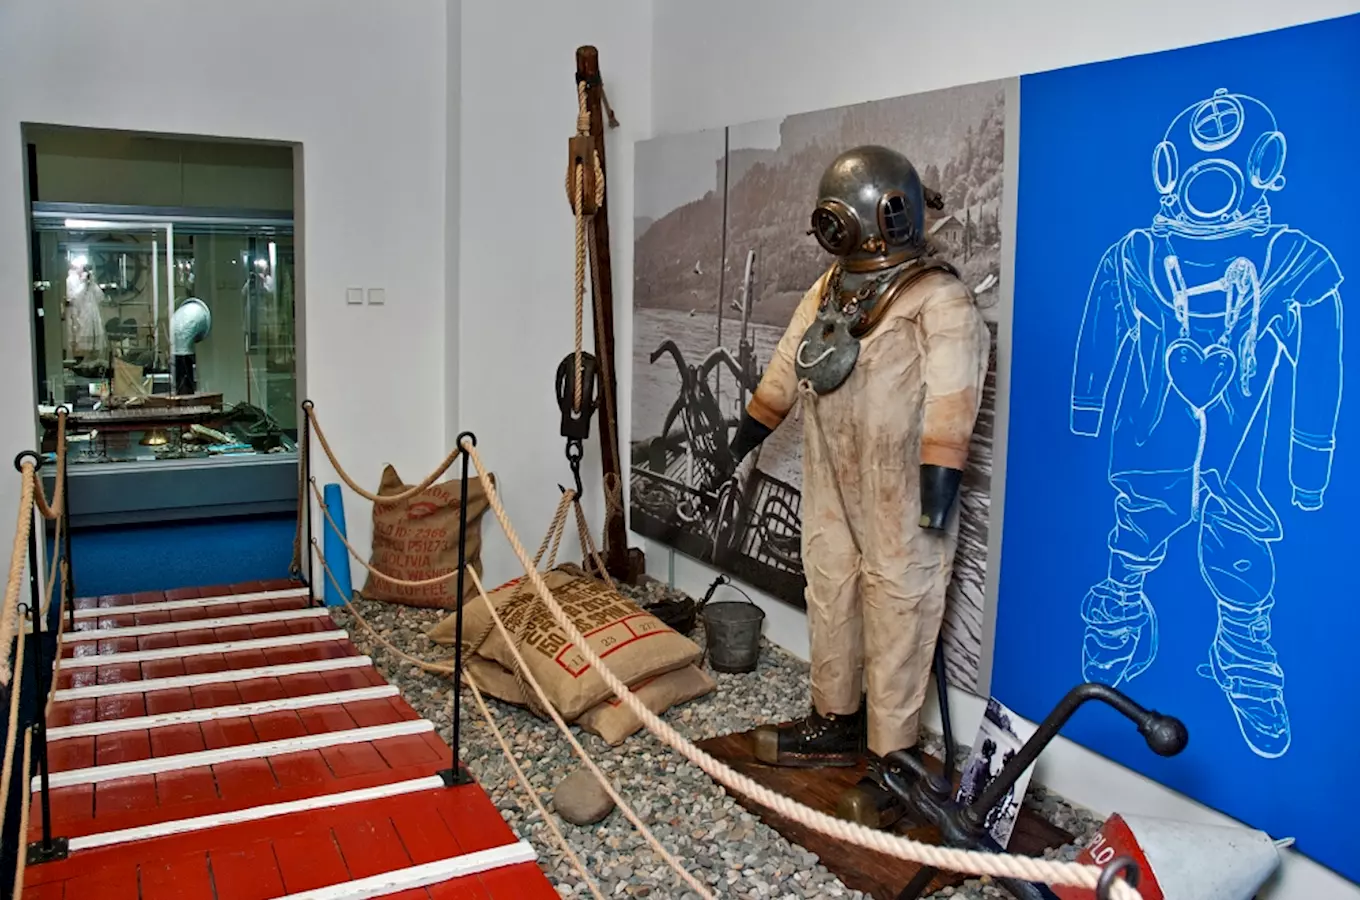 Oblastní muzeum v Děčíně – expozice lodní dopravy na Labi a gotického umění